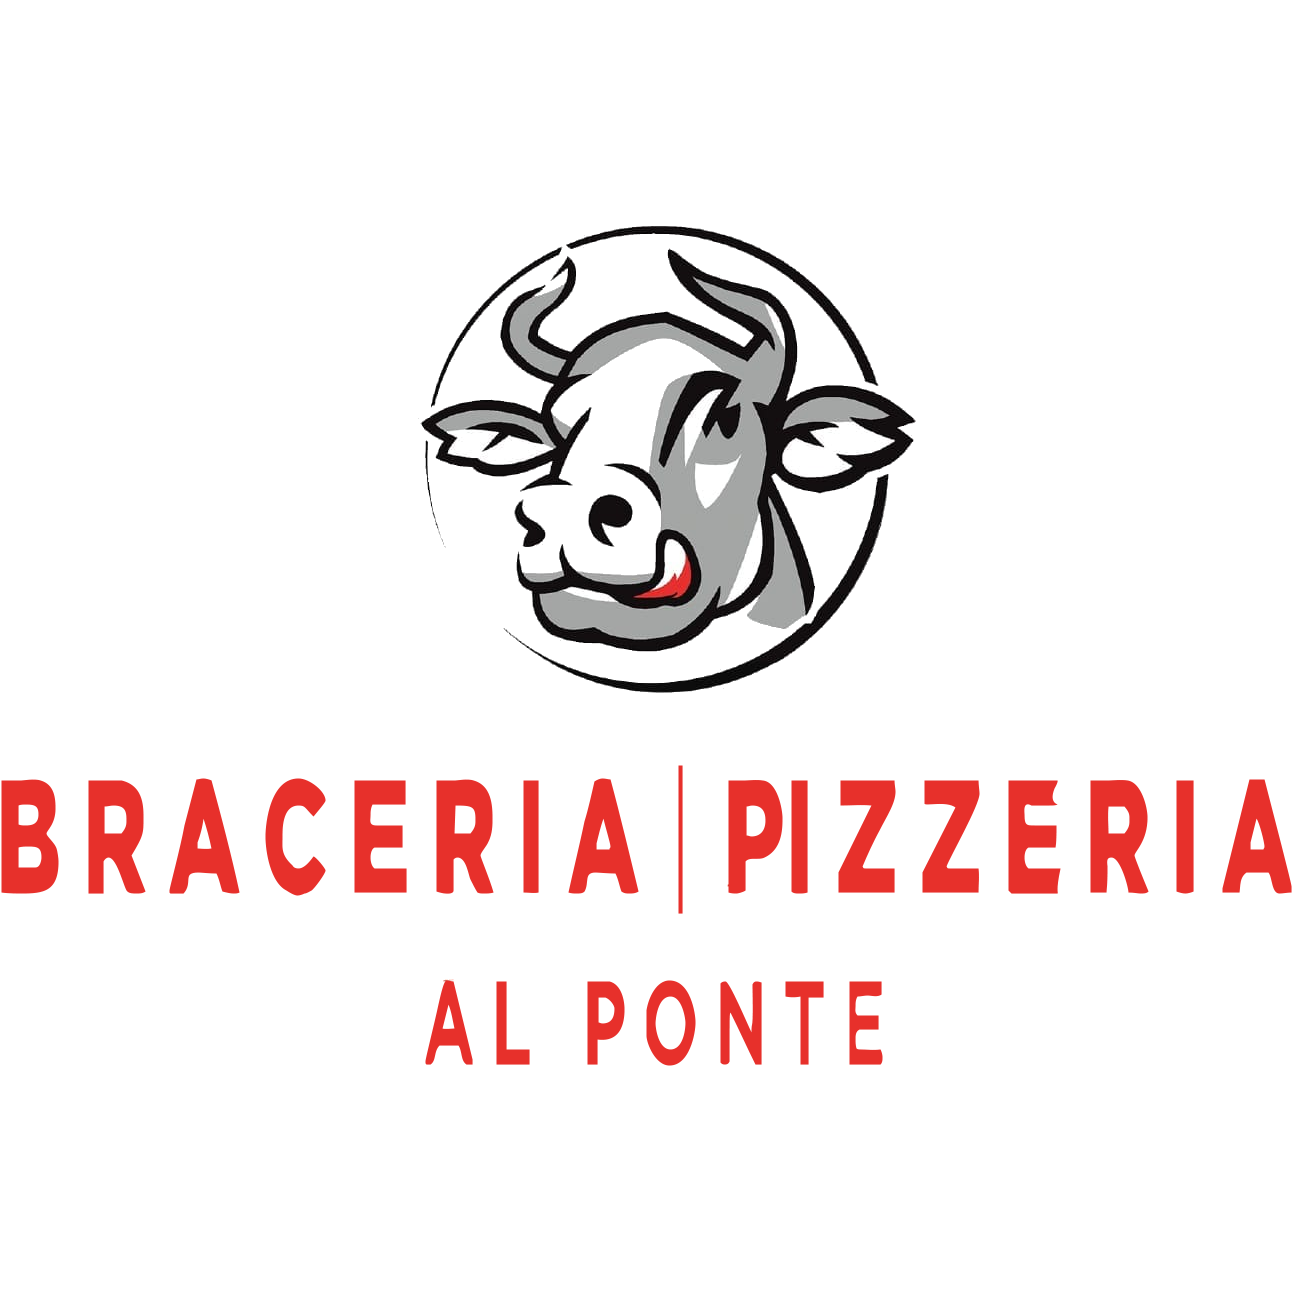 Braceria Pizzeria Al Ponte | Ristorante con specialità di carne Logo